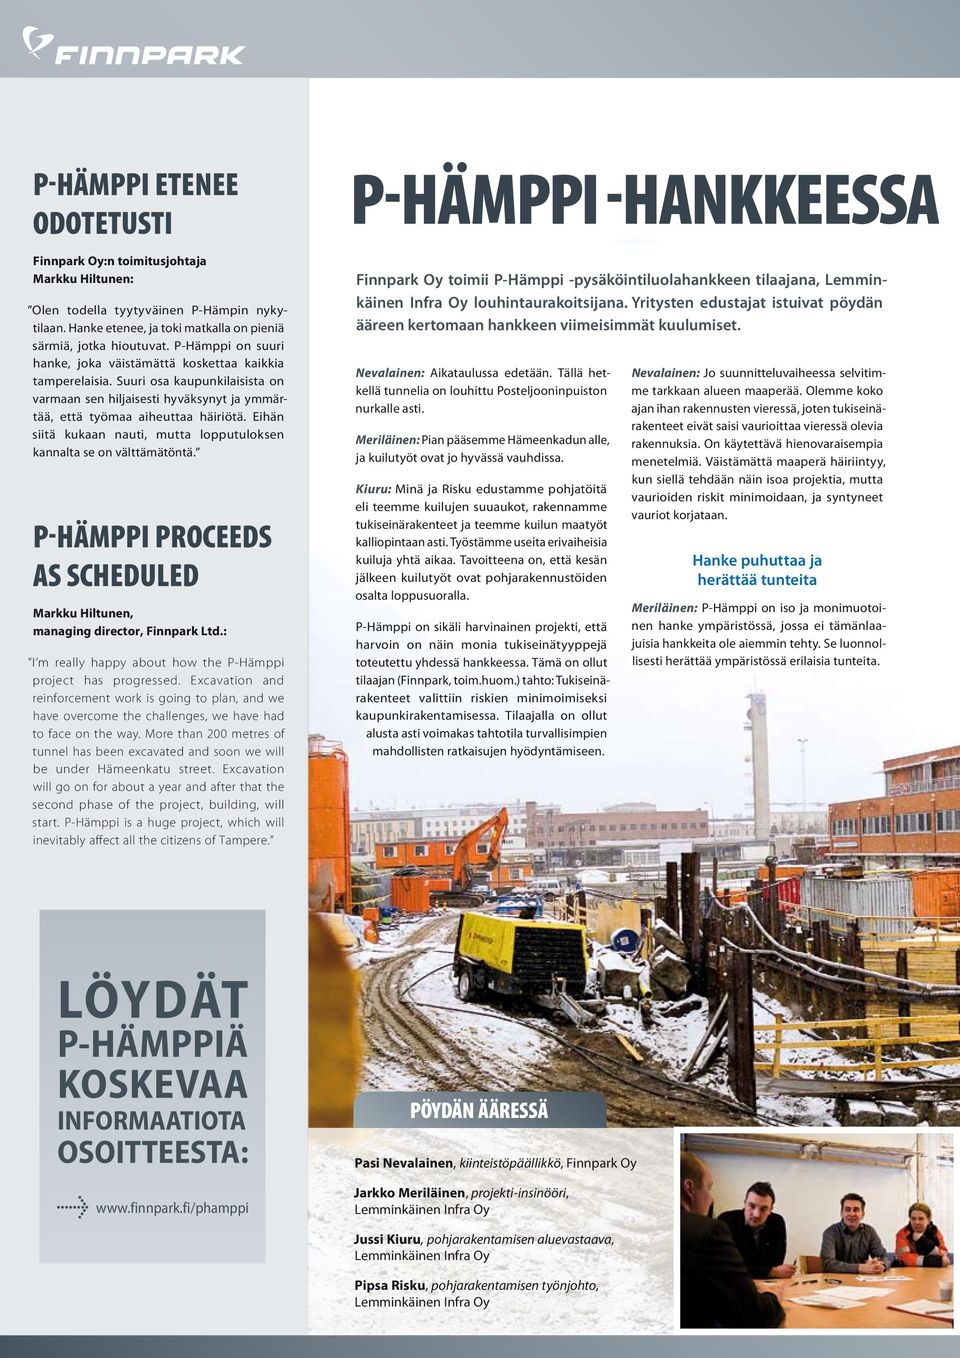 Eihän siitä kukaan nauti, mutta lopputuloksen kannalta se on välttämätöntä. P-Hämppi proceeds as scheduled Markku Hiltunen, managing director, Finnpark Ltd.